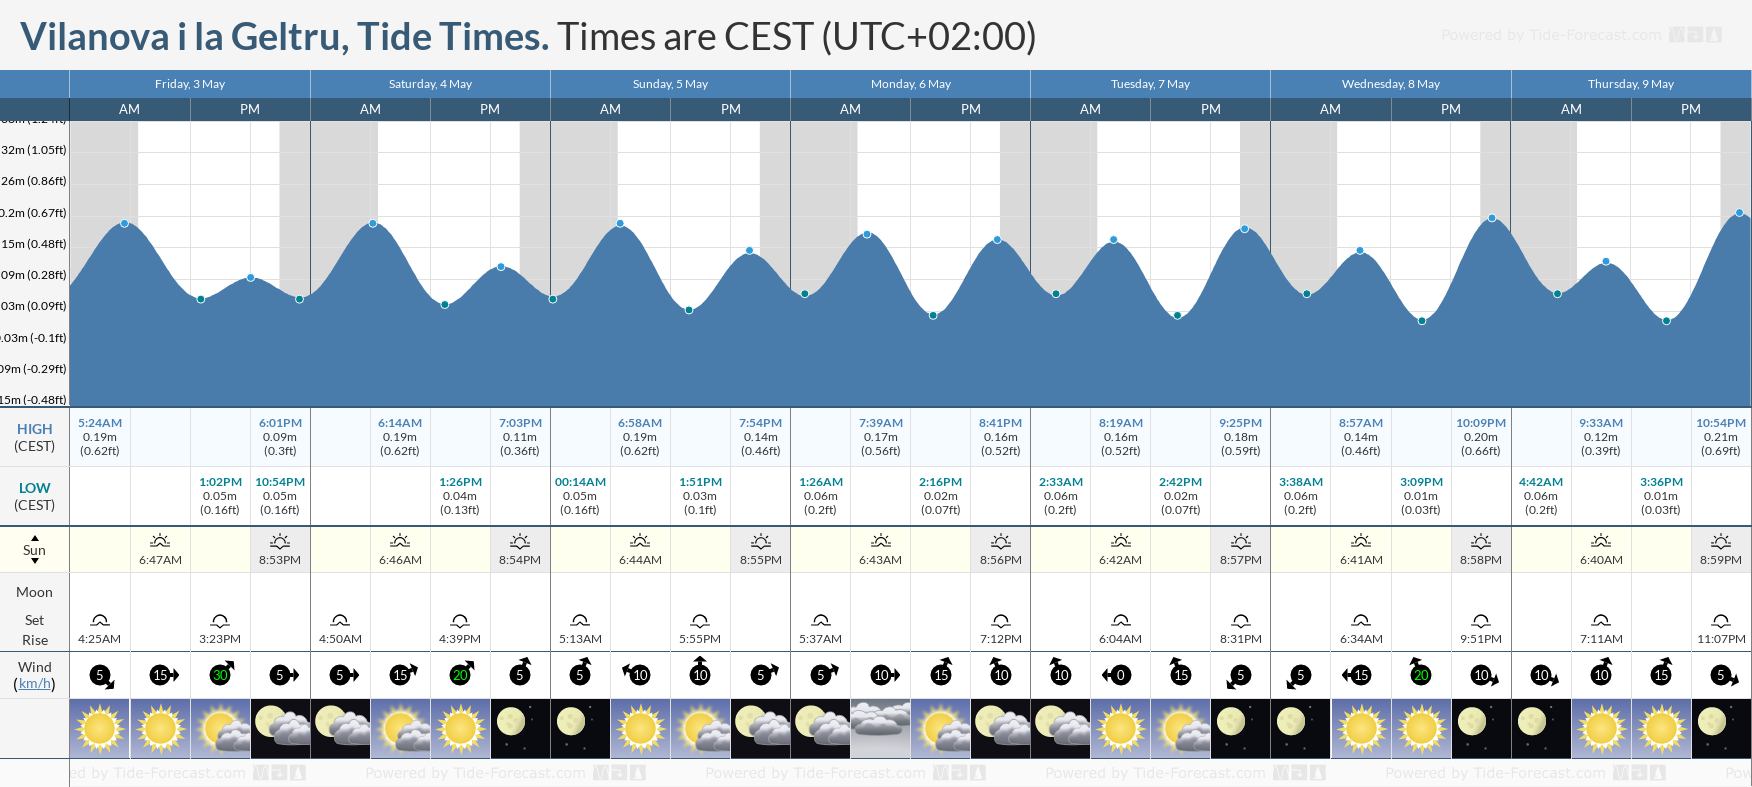 Vilanova i la Geltru Tide Chart including high and low tide tide times for the next 7 days